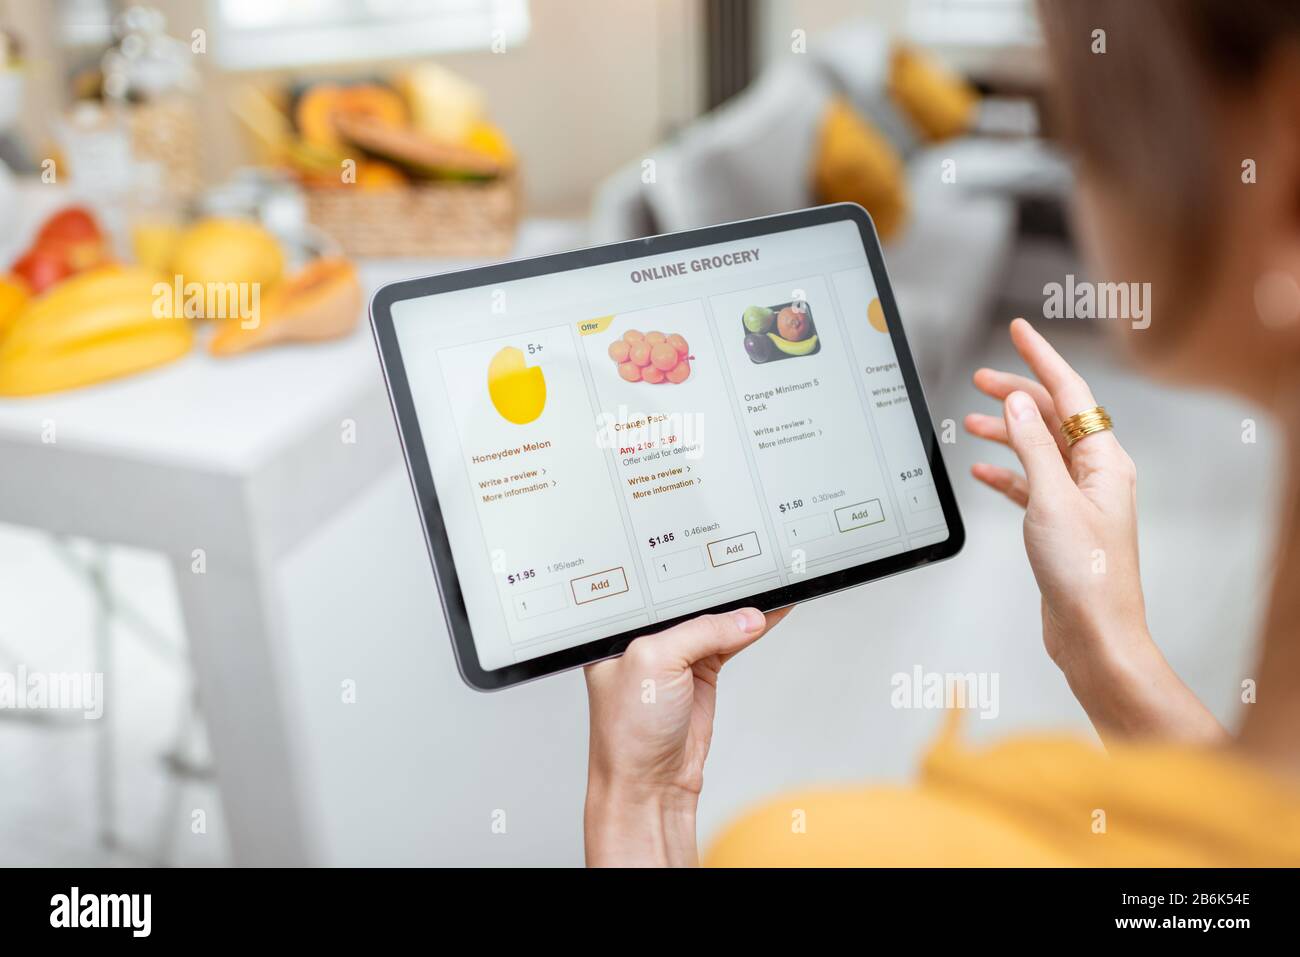 Femme faisant des achats de nourriture en ligne à l'aide d'une tablette numérique dans la cuisine, vue rapprochée sur un écran de tablette. Concept d'achat en ligne à l'aide d'appareils mobiles Banque D'Images